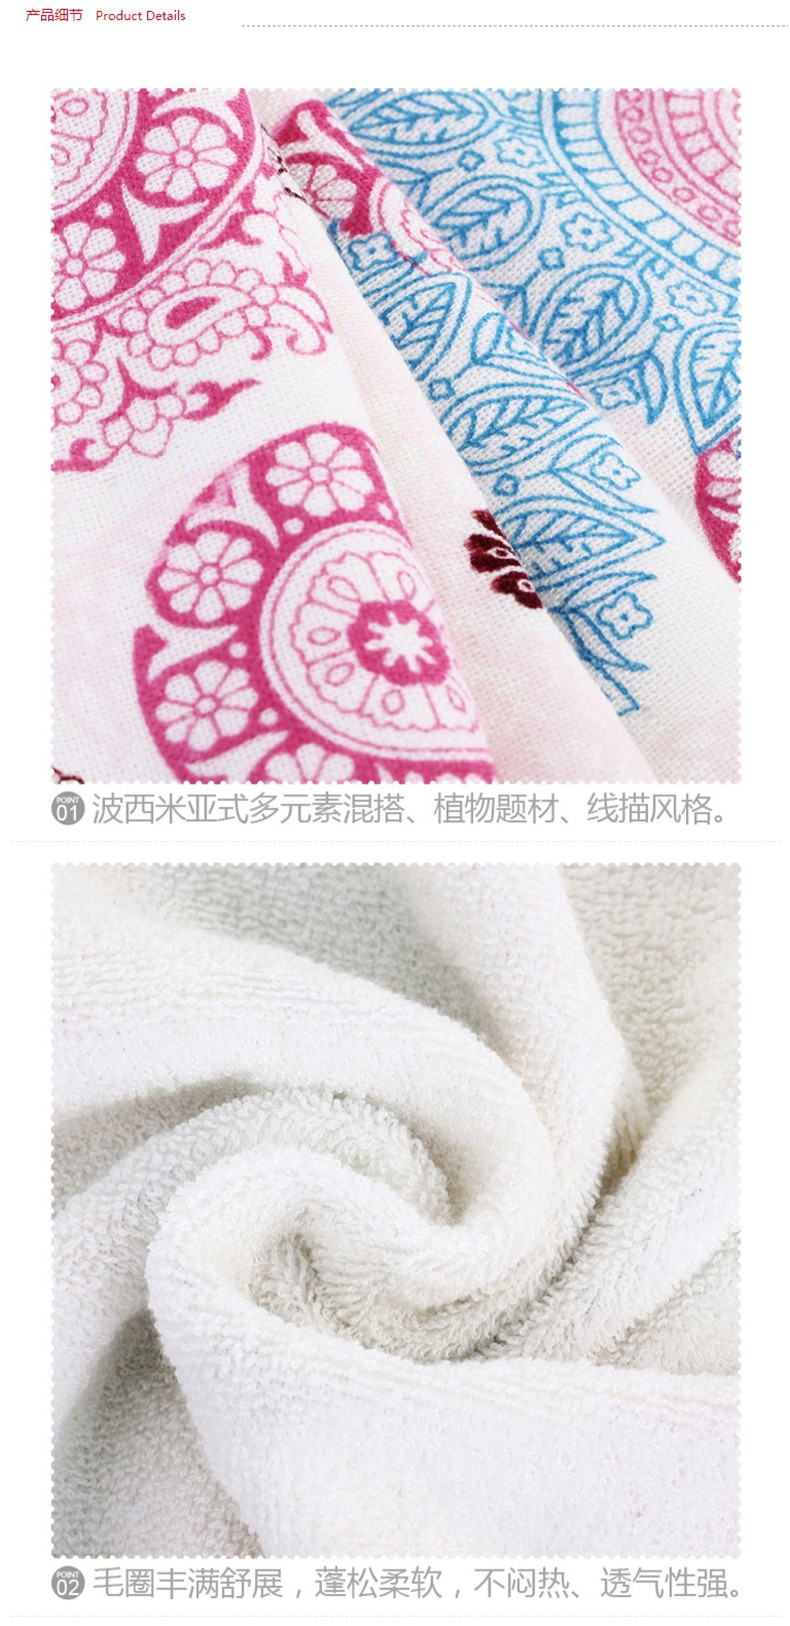 三利纱布棉竹纤维AB版浴巾 70×140cm 波西米亚风格 柔软舒适吸水裹身巾 粉紫天蓝